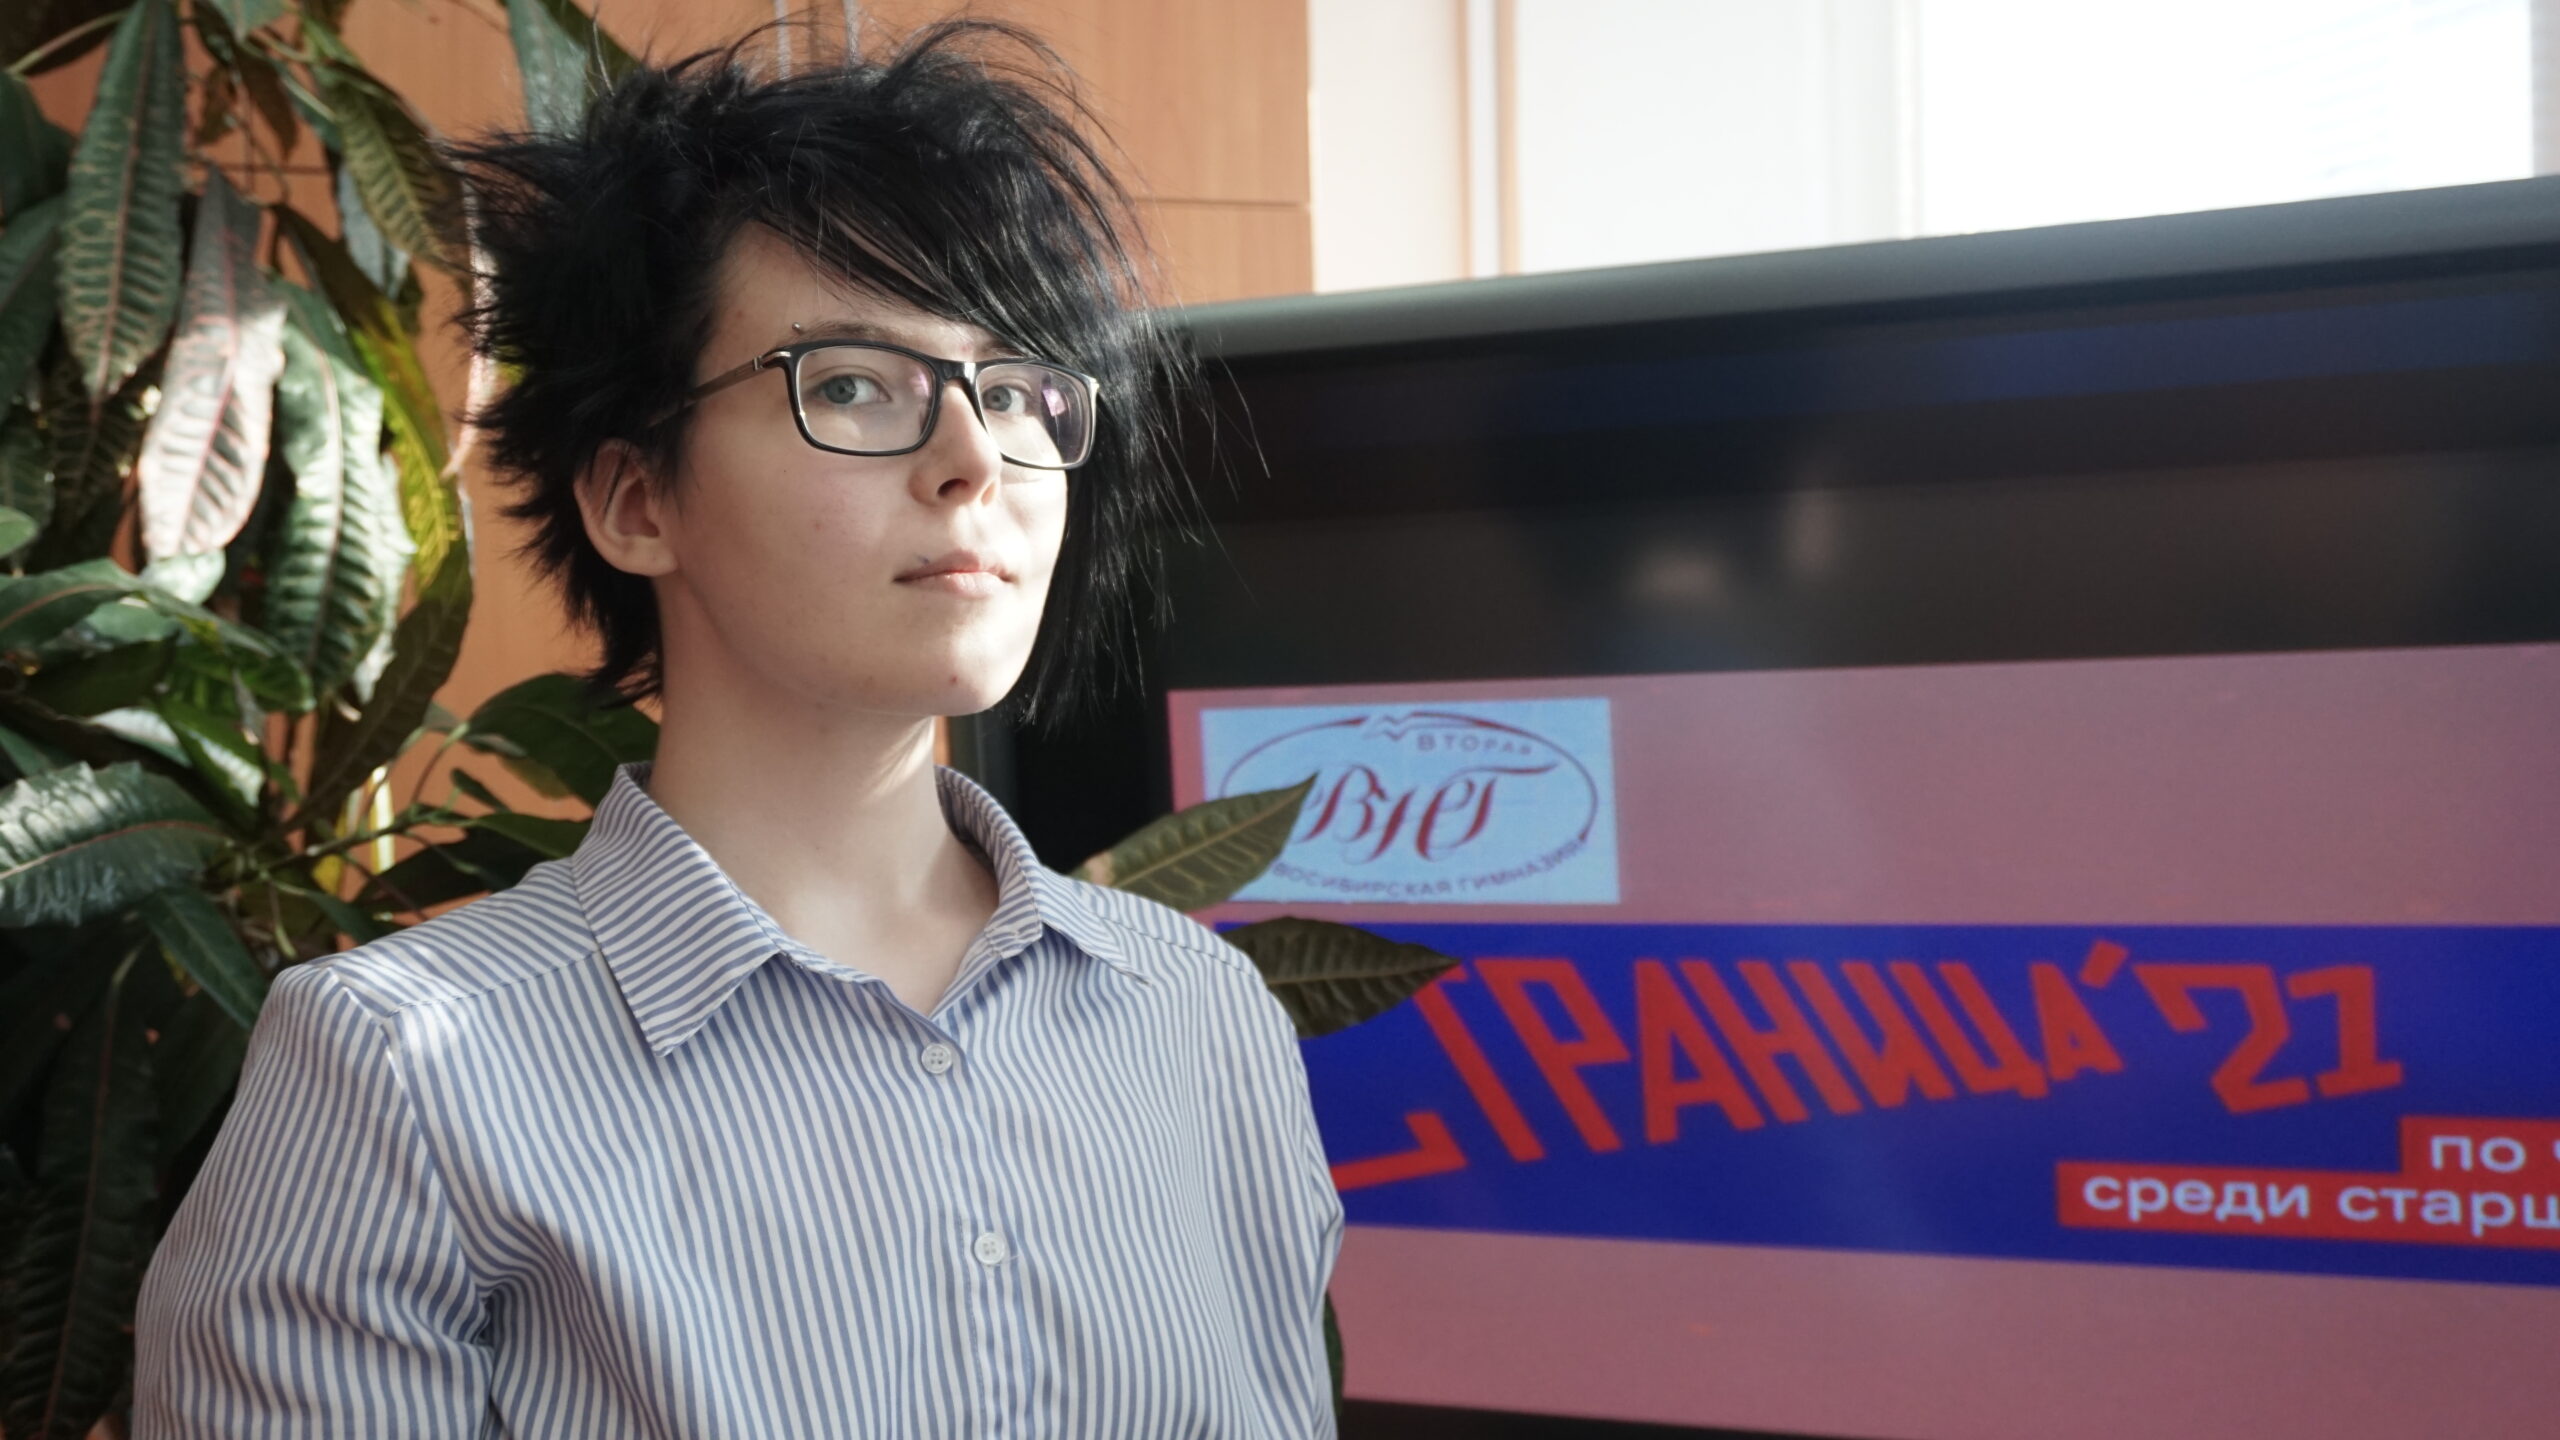 Чемпионат по чтению вслух среди старшеклассников «Страница’21» стартовал в Новосибирске